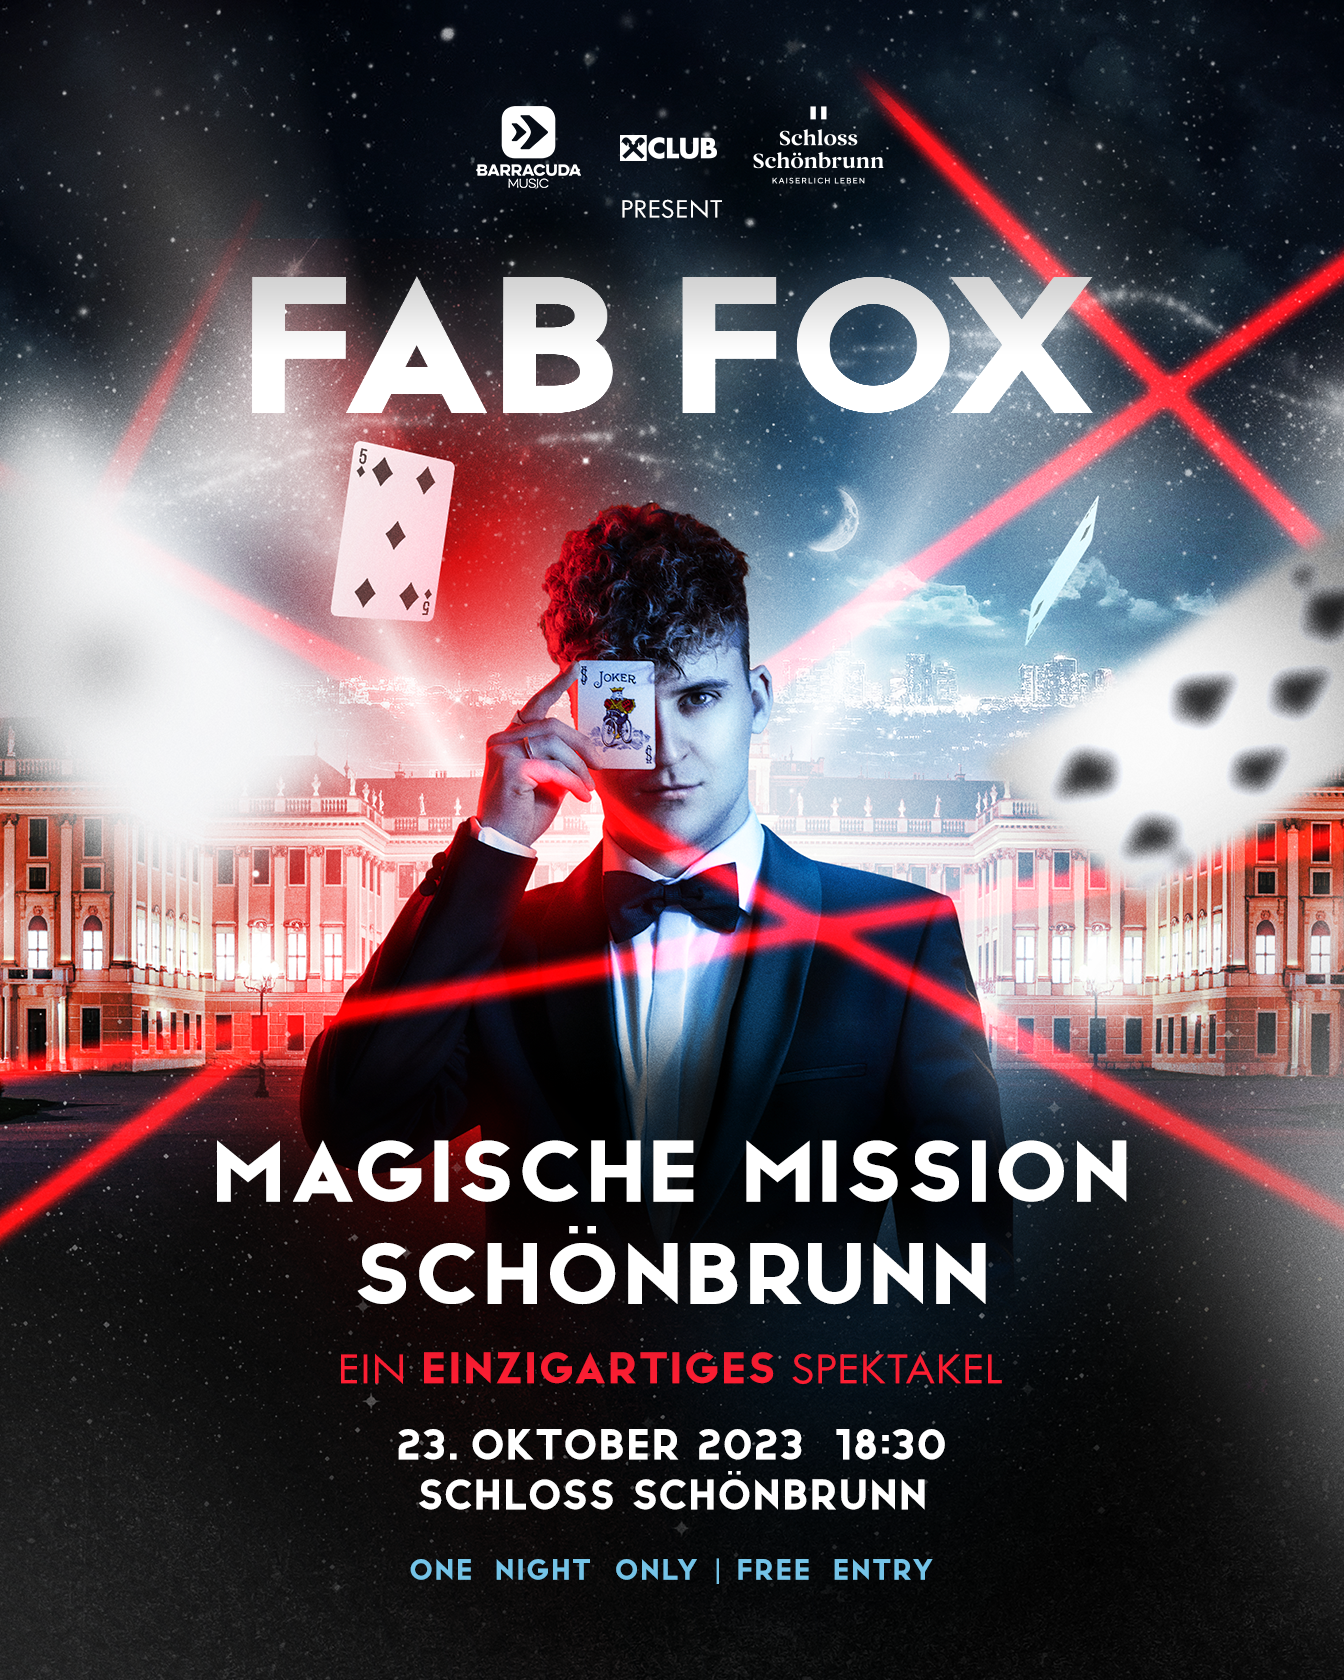 Fab Fox am 23. October 2023 @ Schloss Schönbrunn.